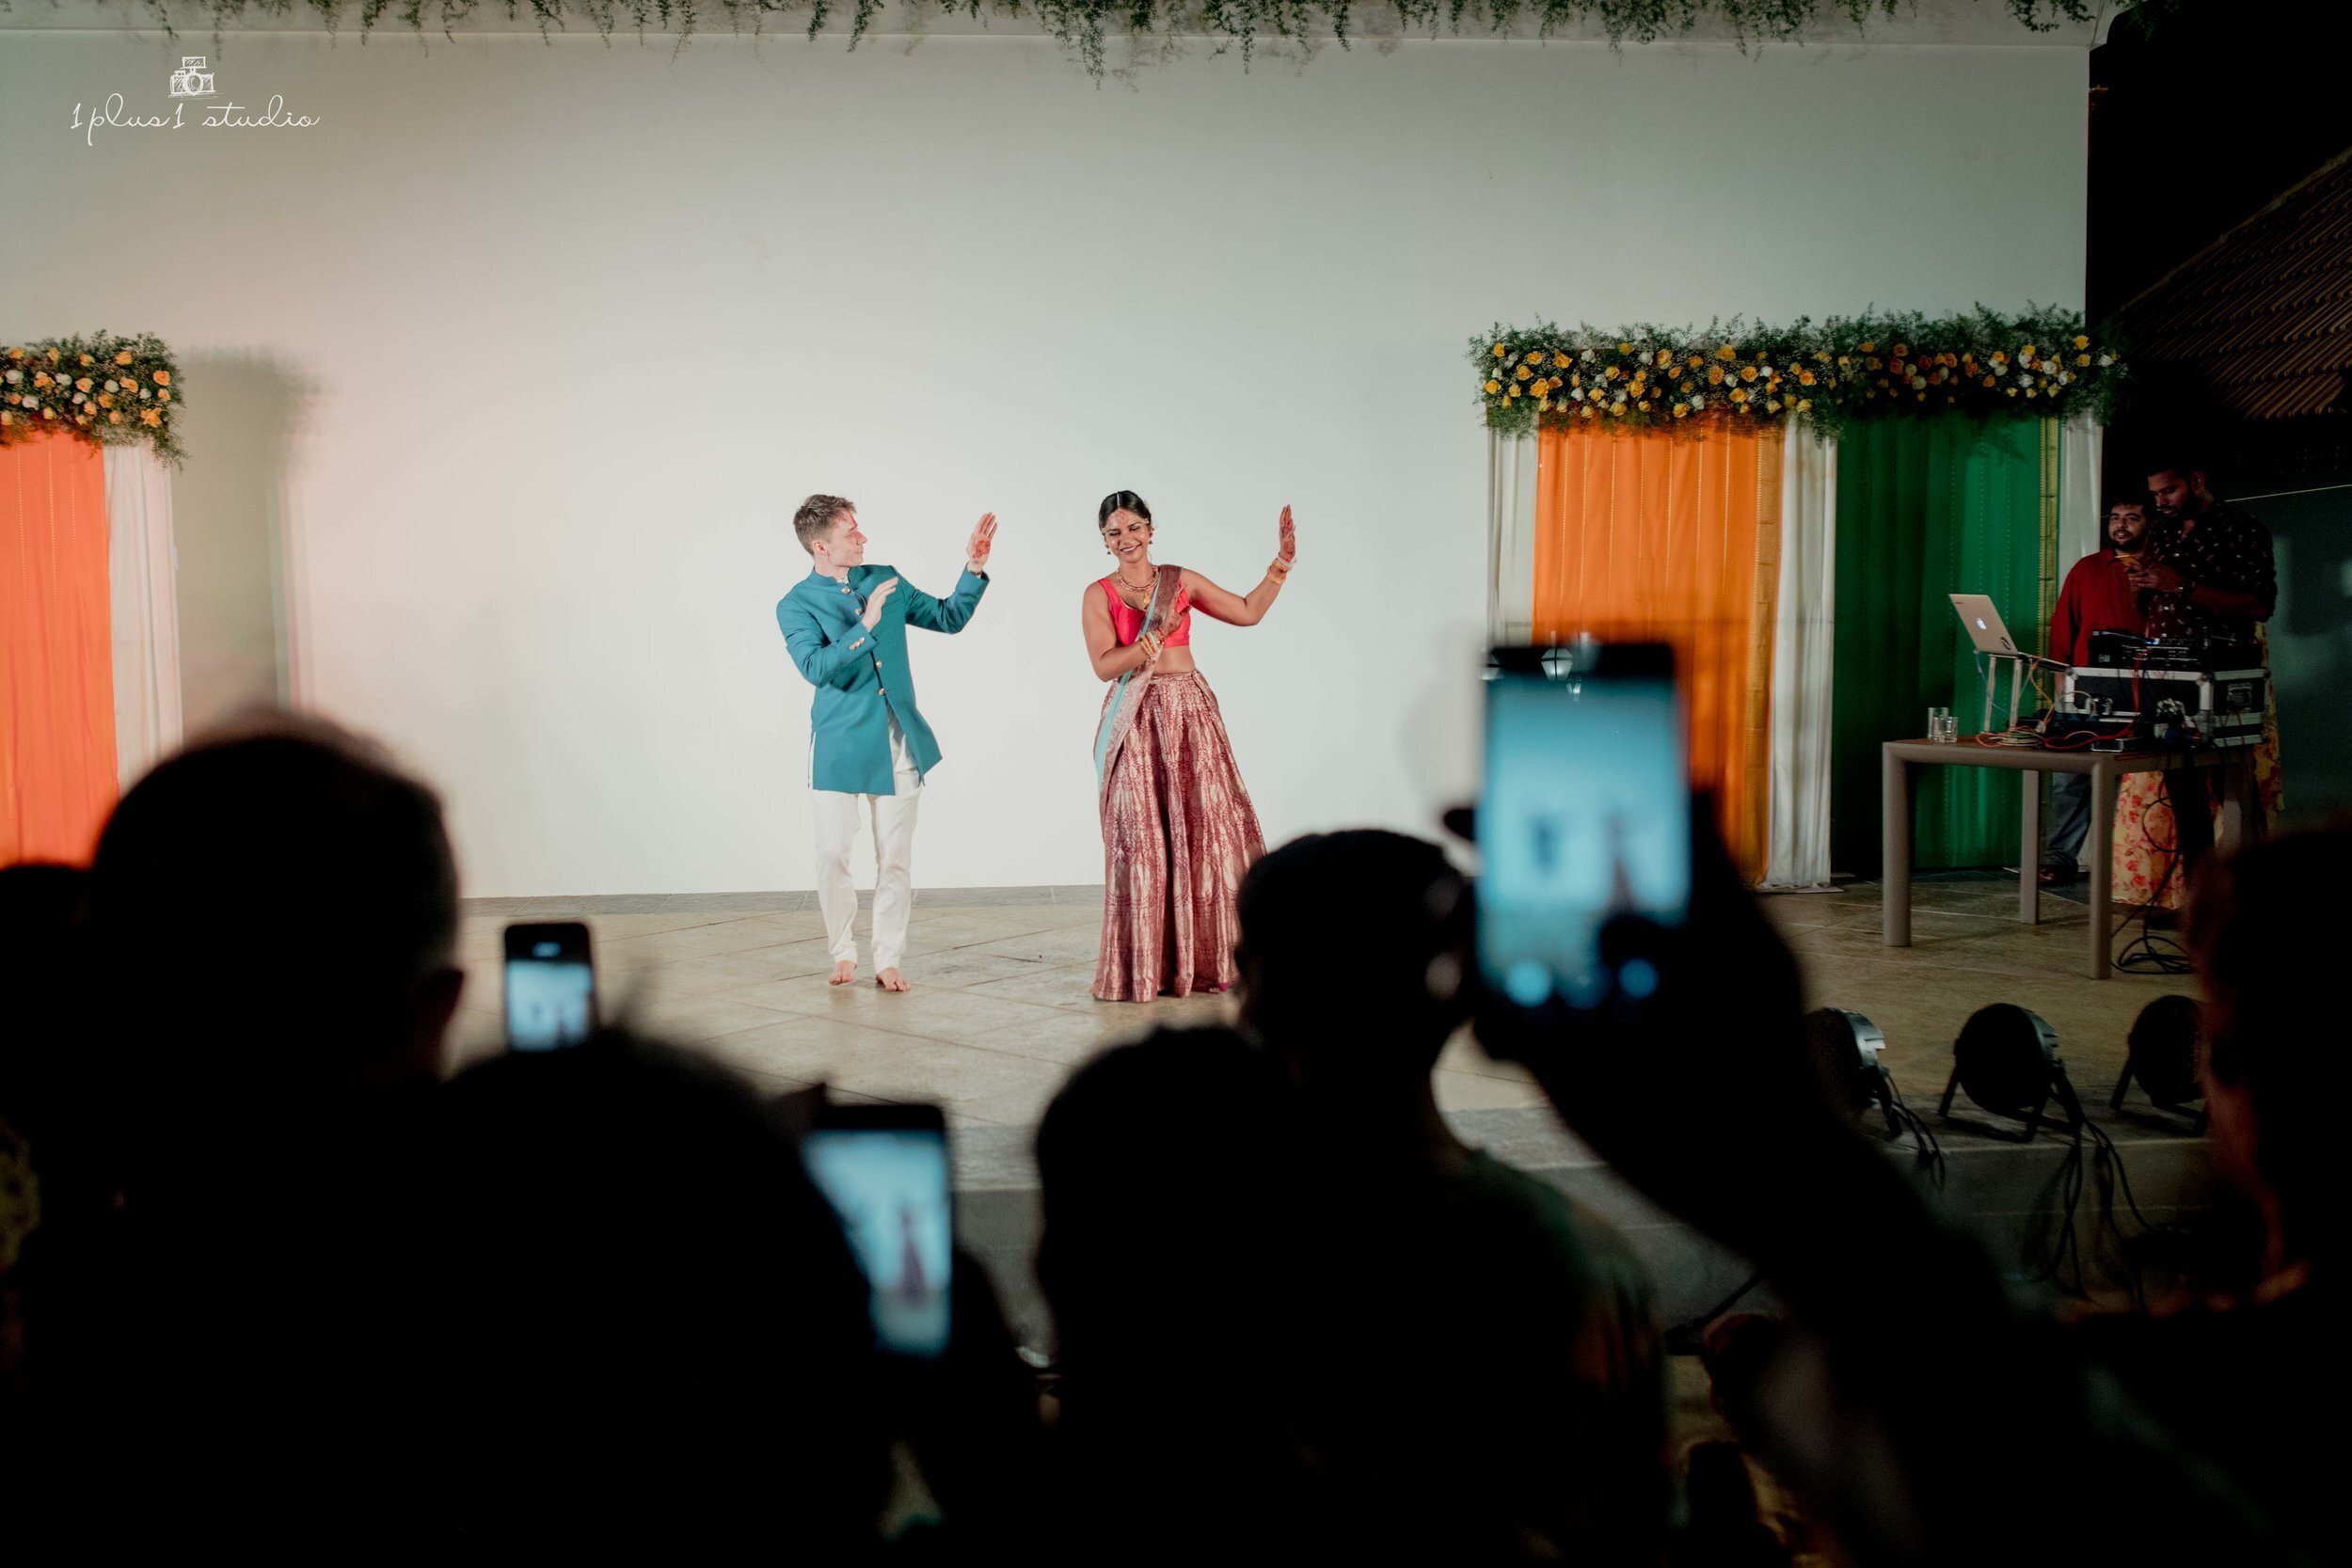 Pondicherry+Destination+Wedding-68.jpeg